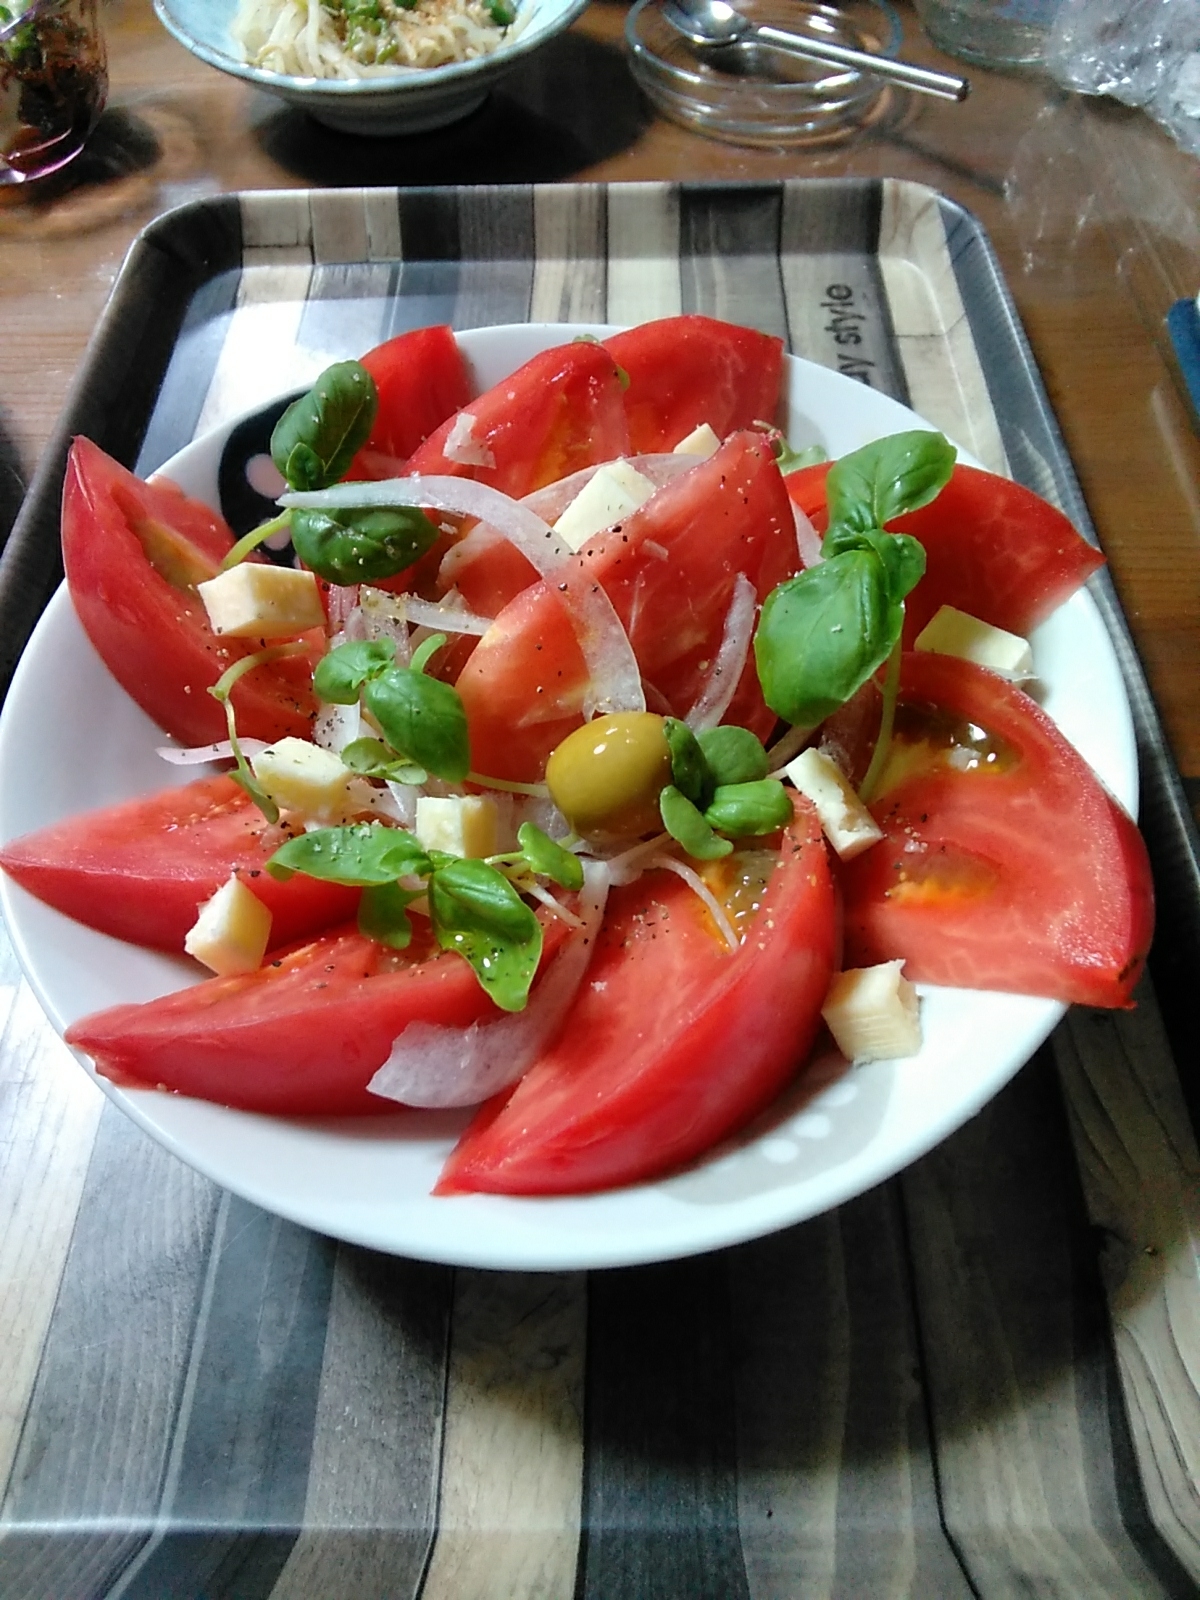 バジル(サラダバジル)とトマトとオリーブのサラダ